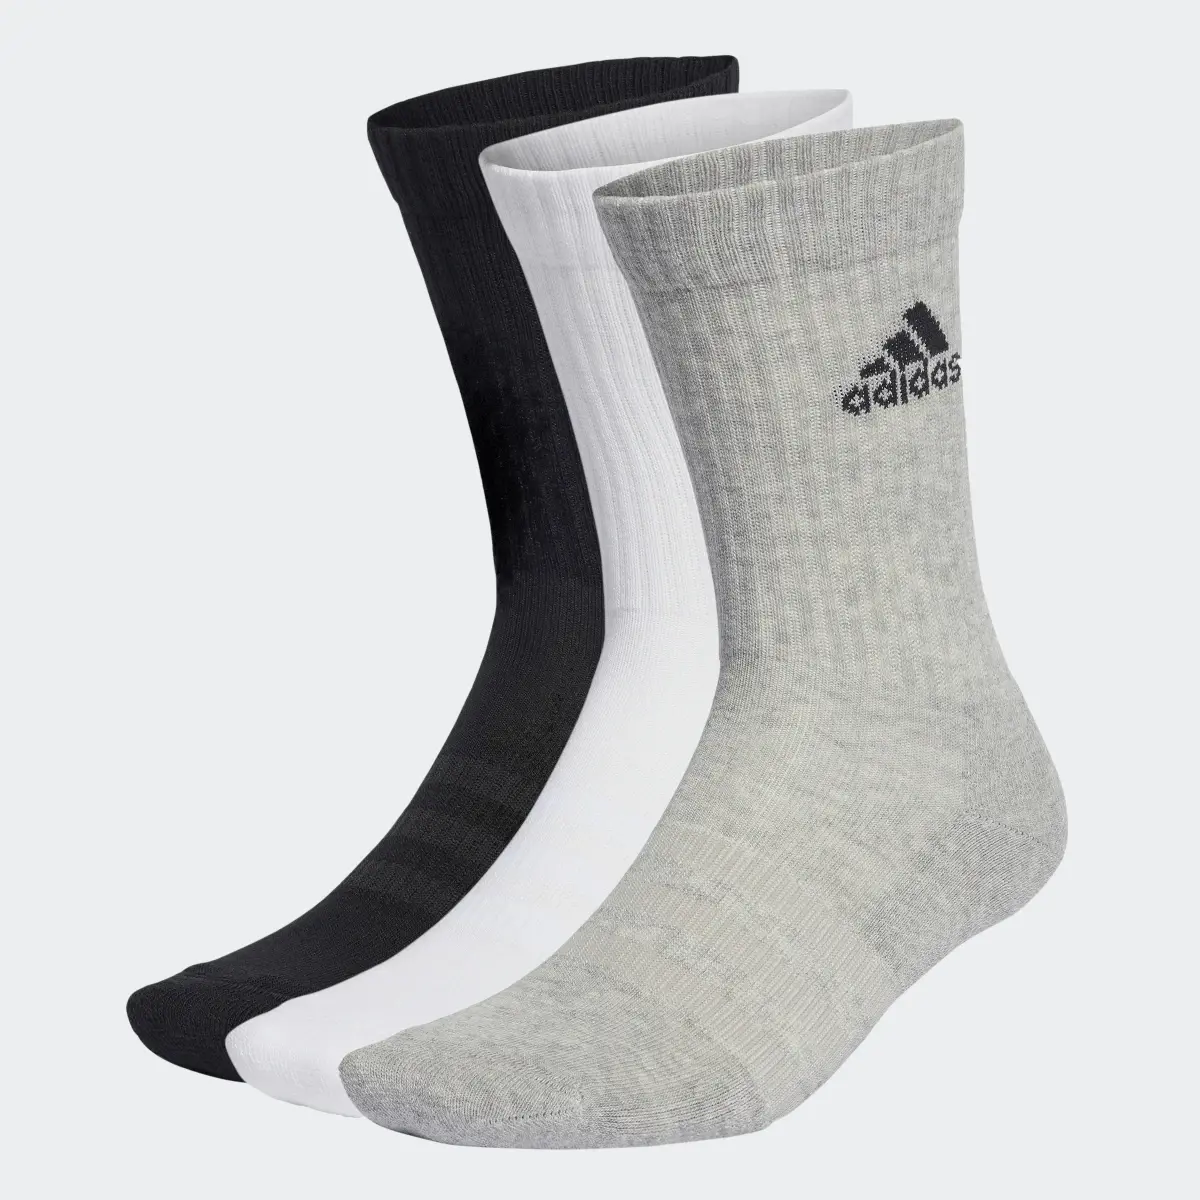 Adidas Cushioned Crew Socken, 3 Paar. 2